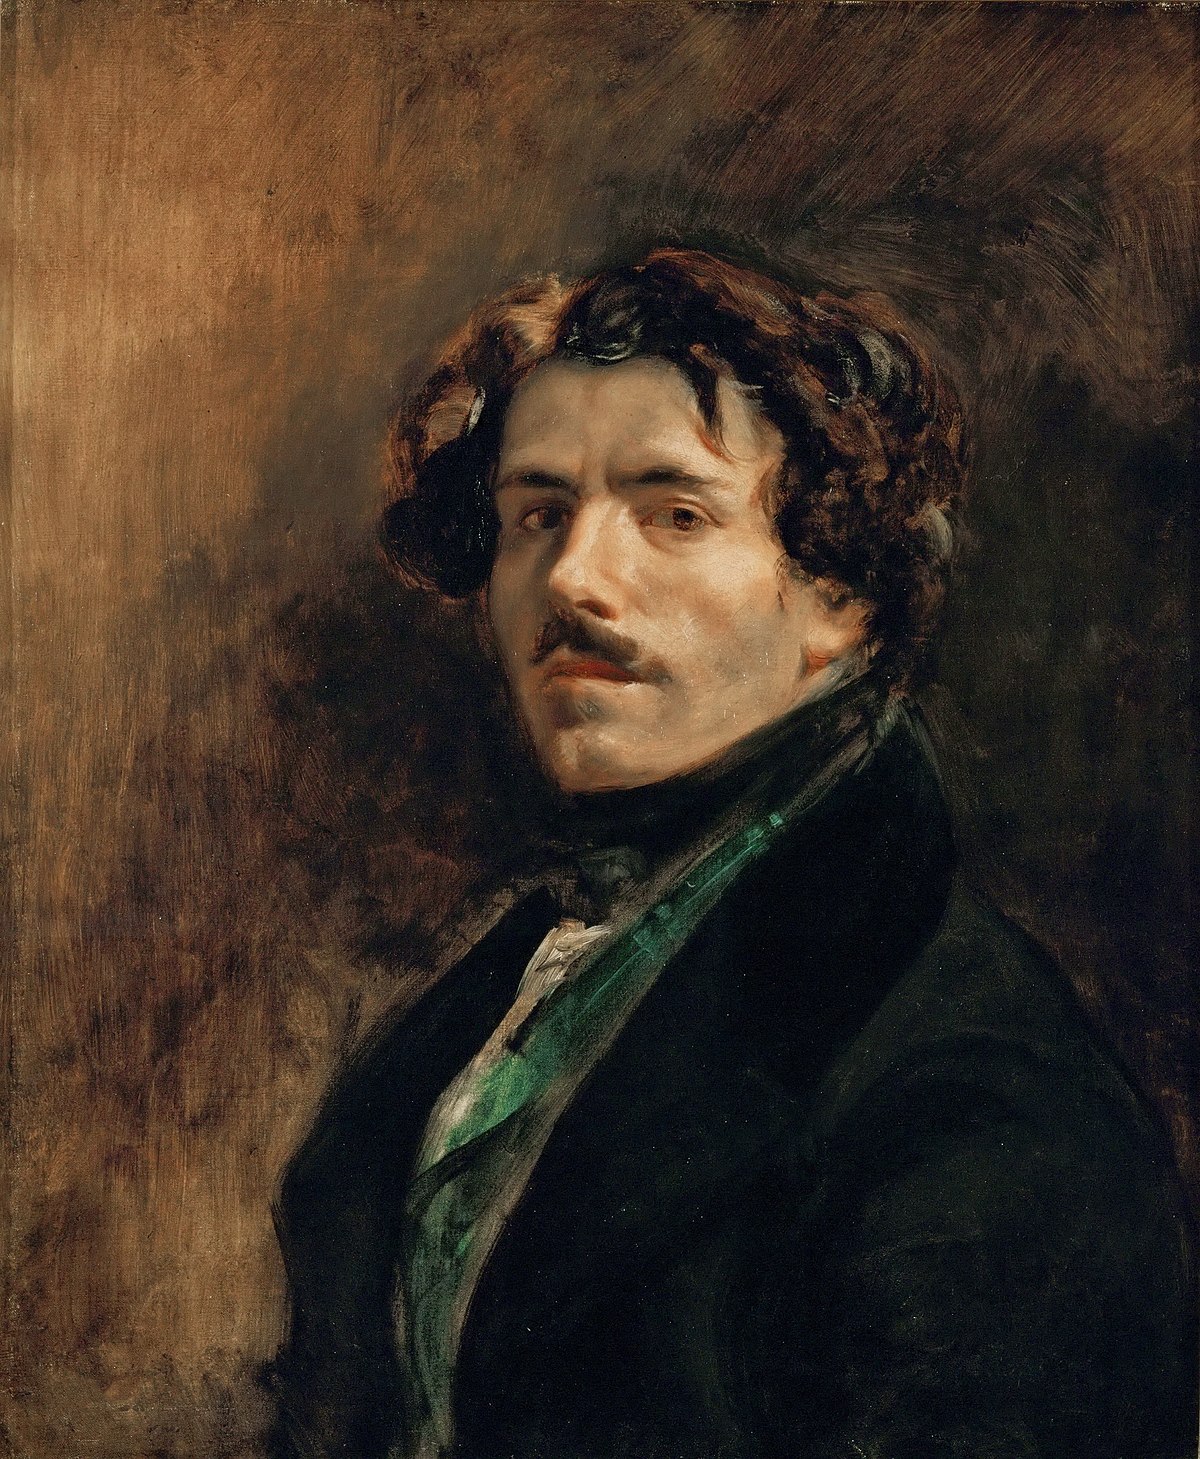 Eugène Delacroix.jpg